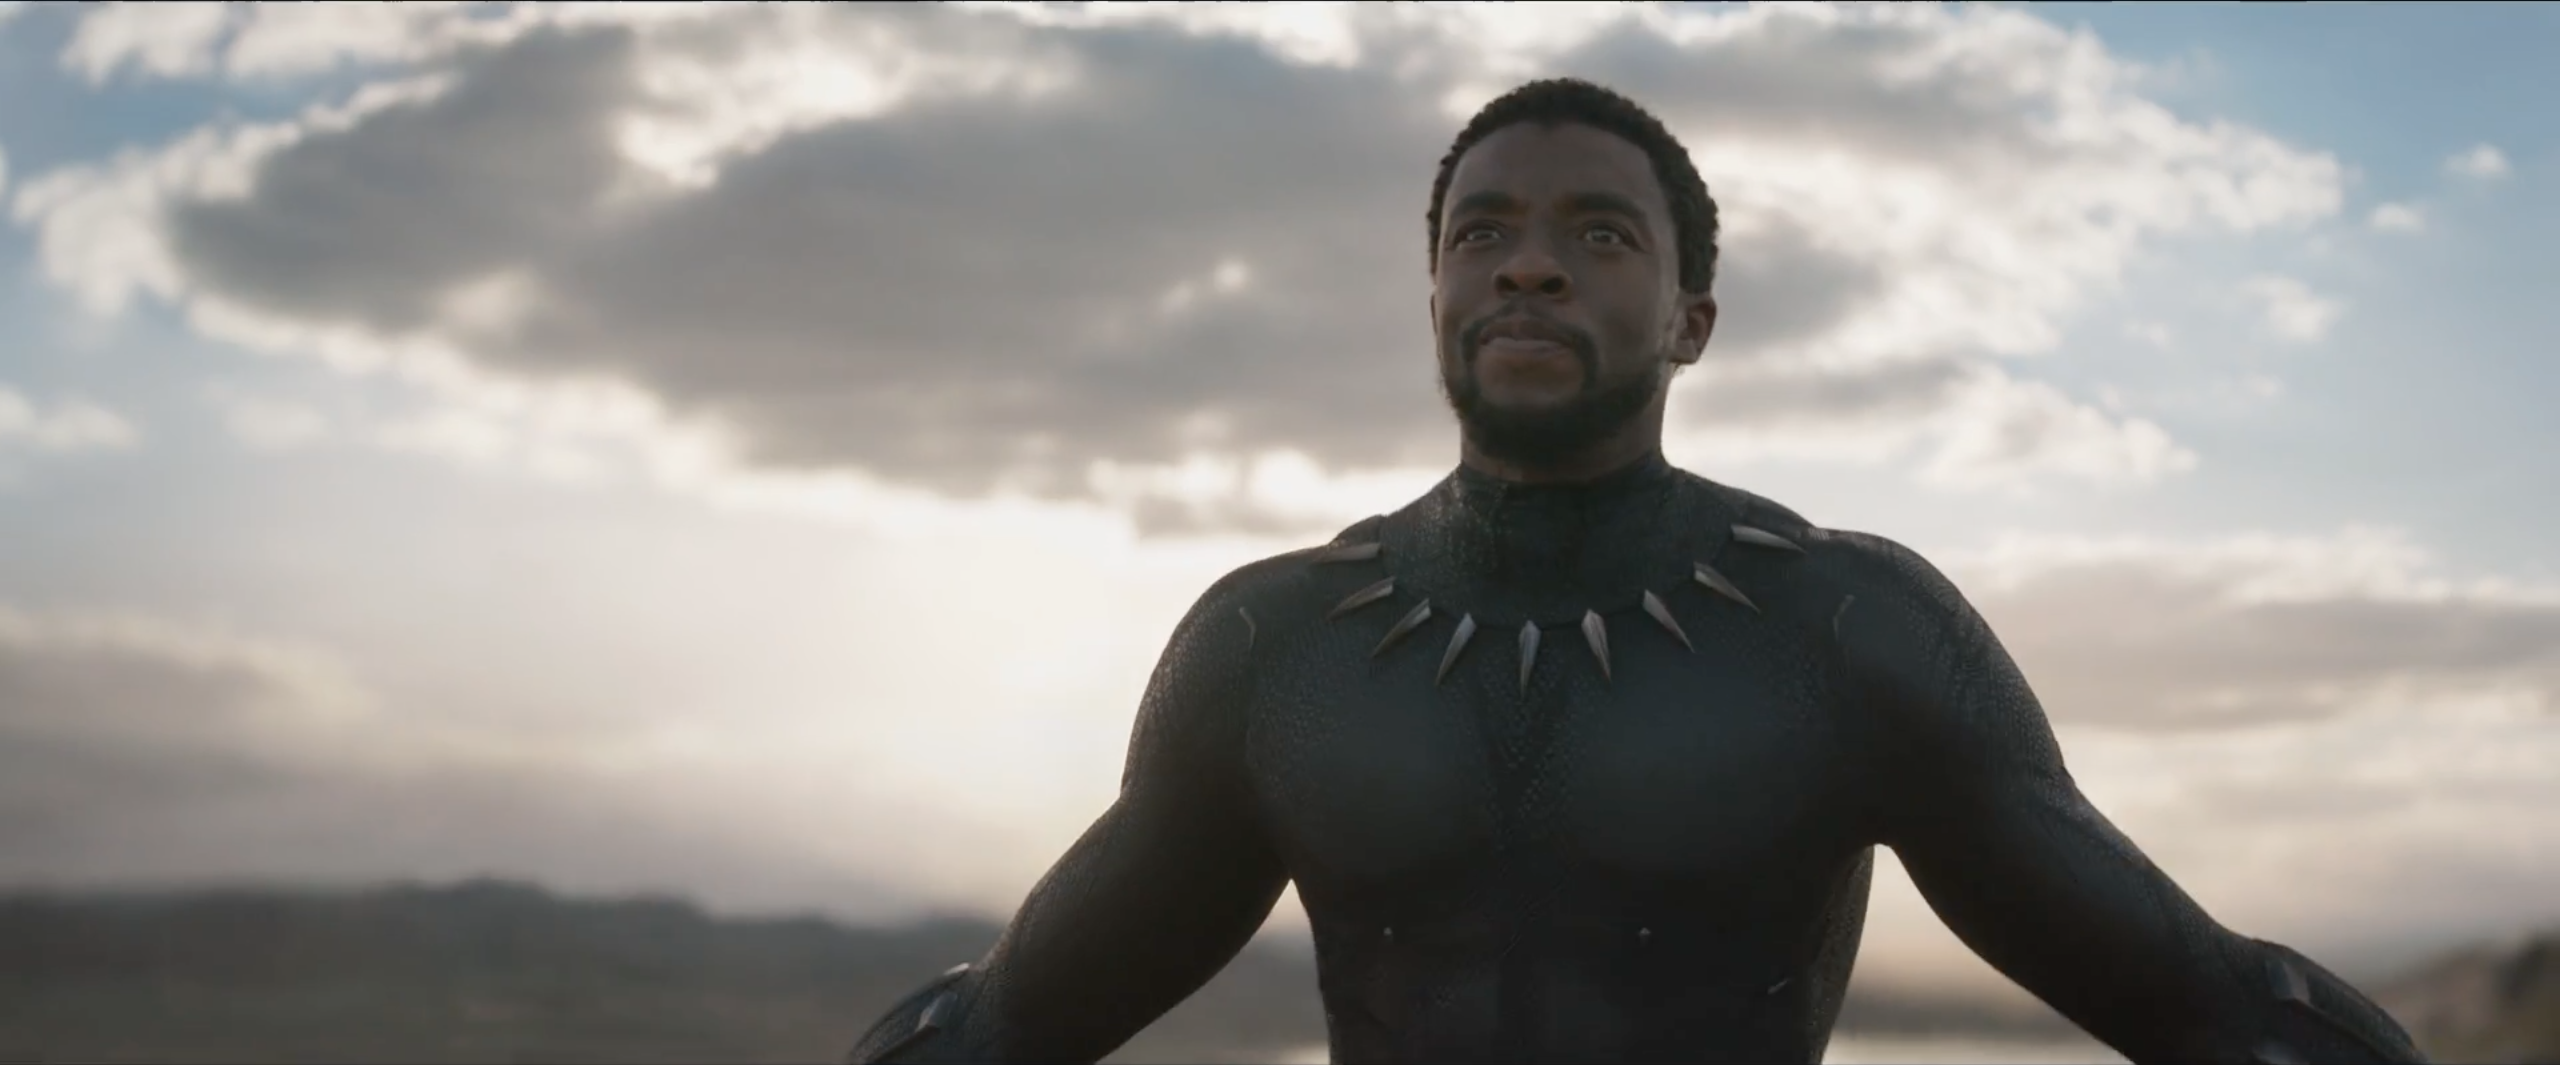 Black Panther - Oltre 1 miliardo di dollari al box office mondiale